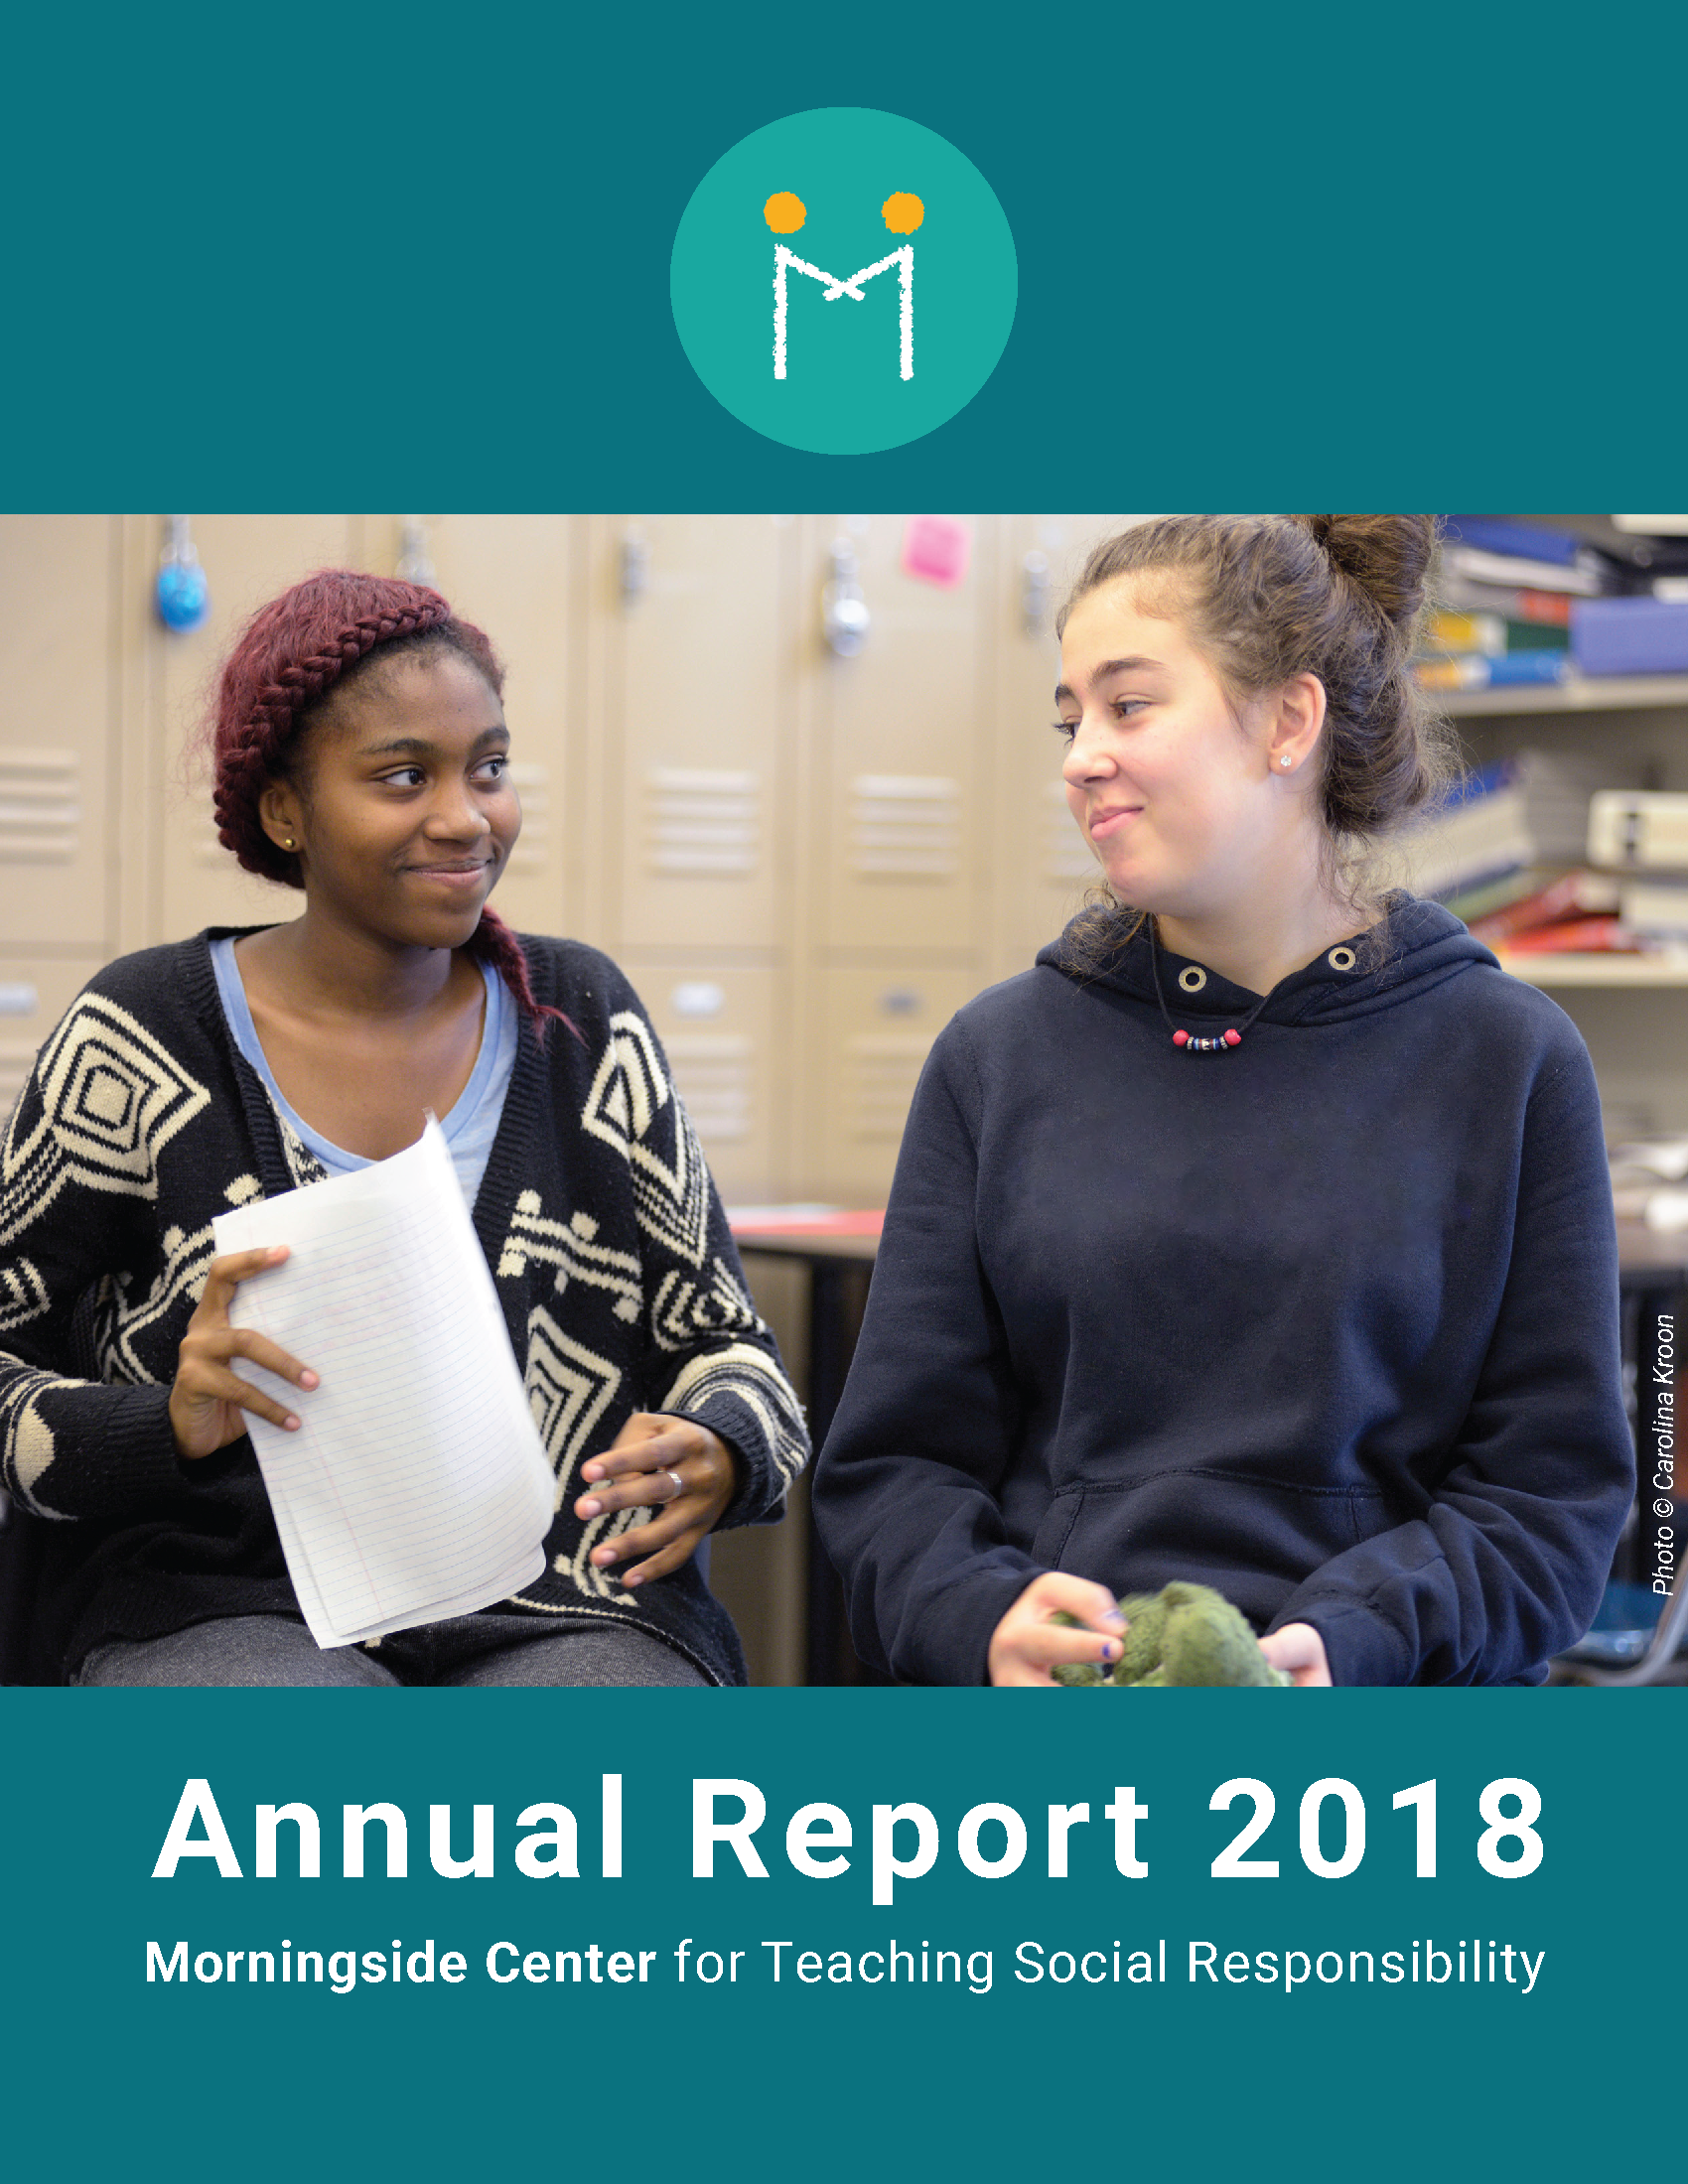 AnnualReport2018cover